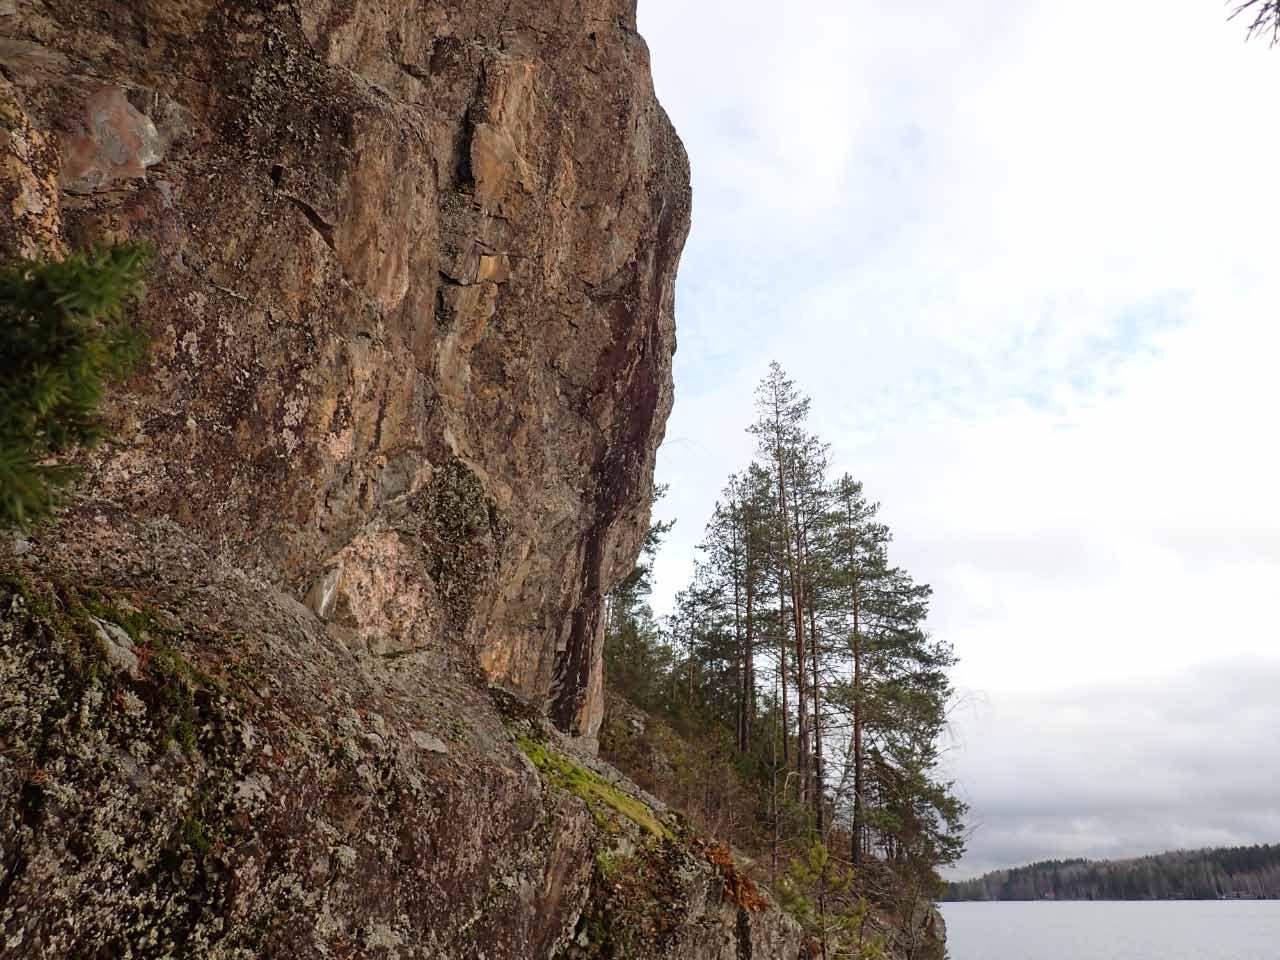 Kuva: Kalliomaalaus pystysuorassa kallioseinämässä Ruotsalainen -järven rannalla. Lahden museot / Päijät-Hämeen alueellinen vastuumuseo. CC BY 4.0 Hannu Poutiainen 4.11.2020